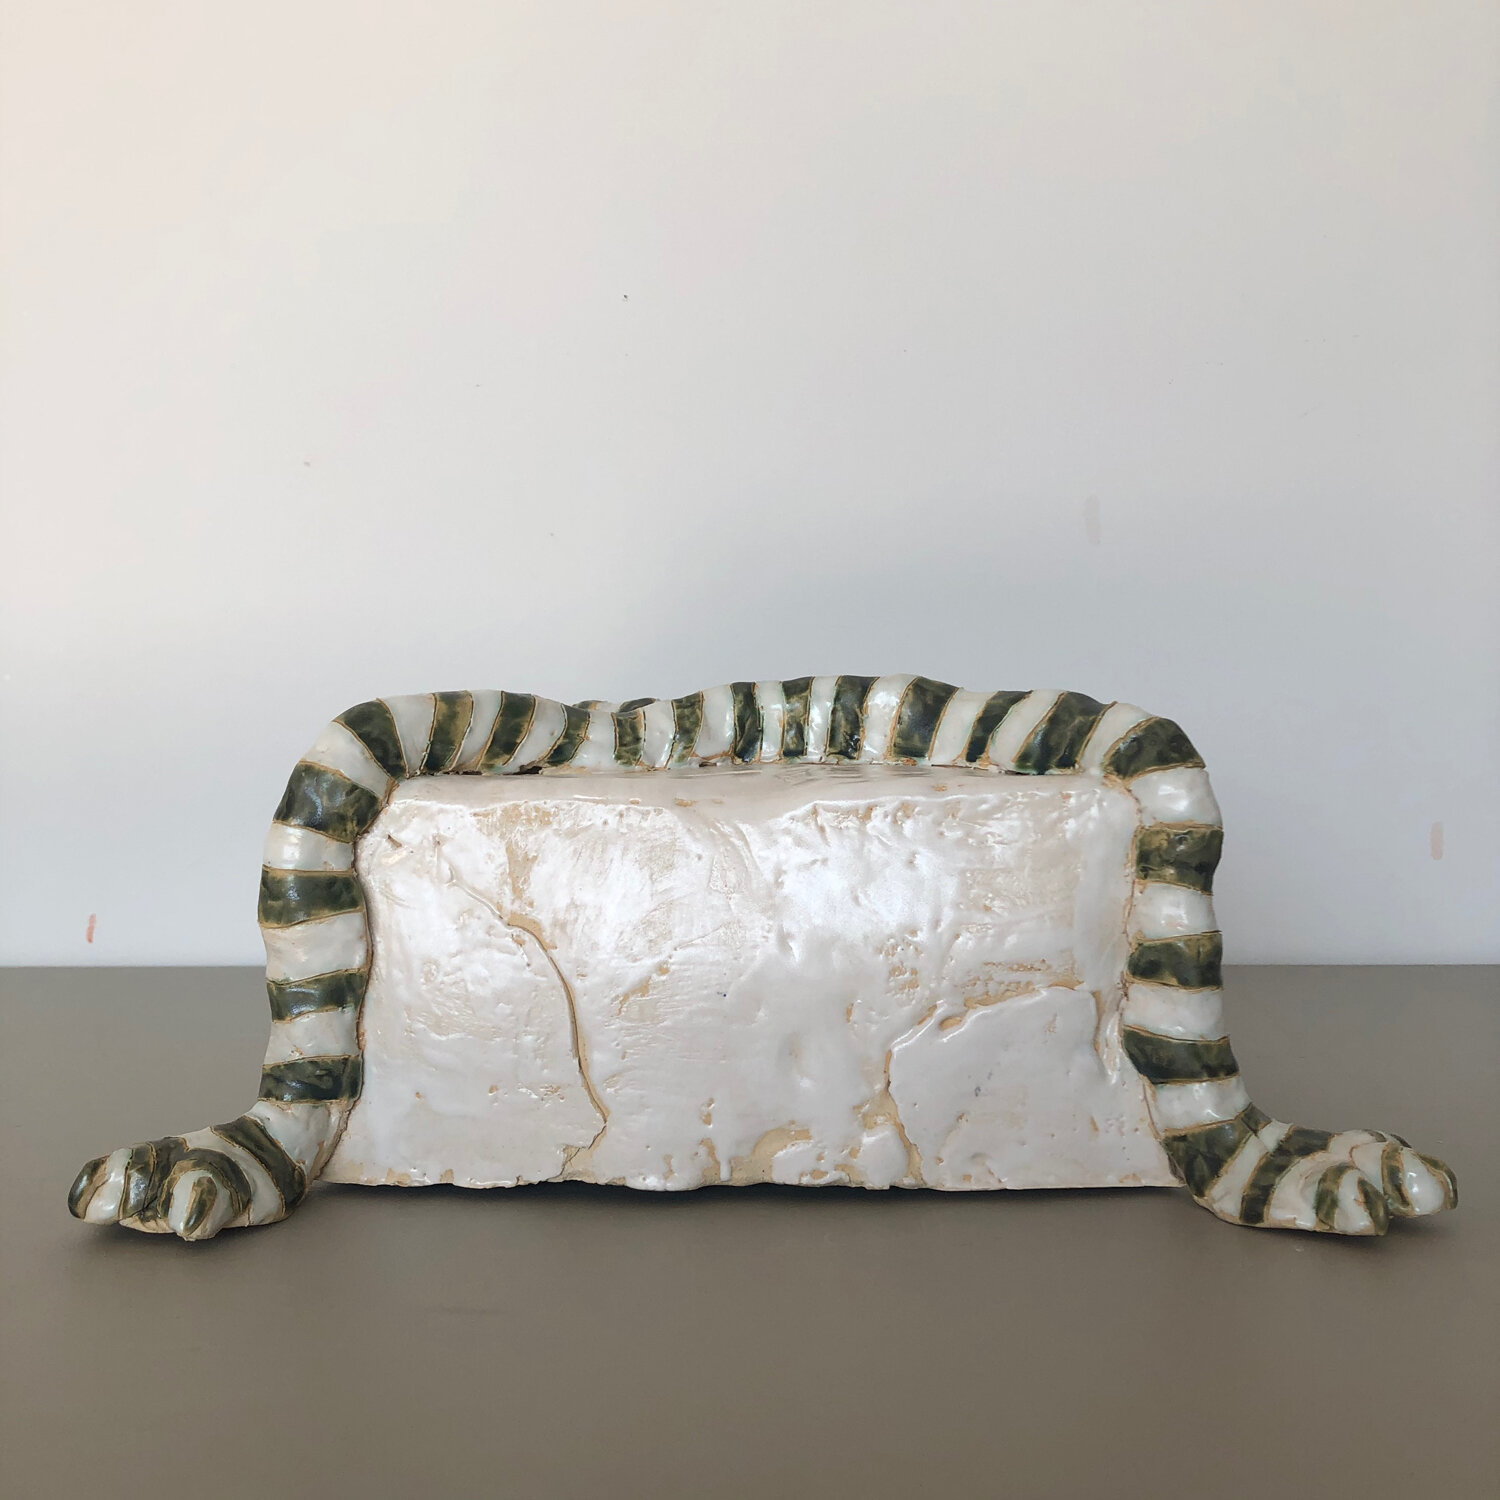 Funerary Box with Legs, 2020, glazed ceramic, 5 3/4 x 15 x 11"